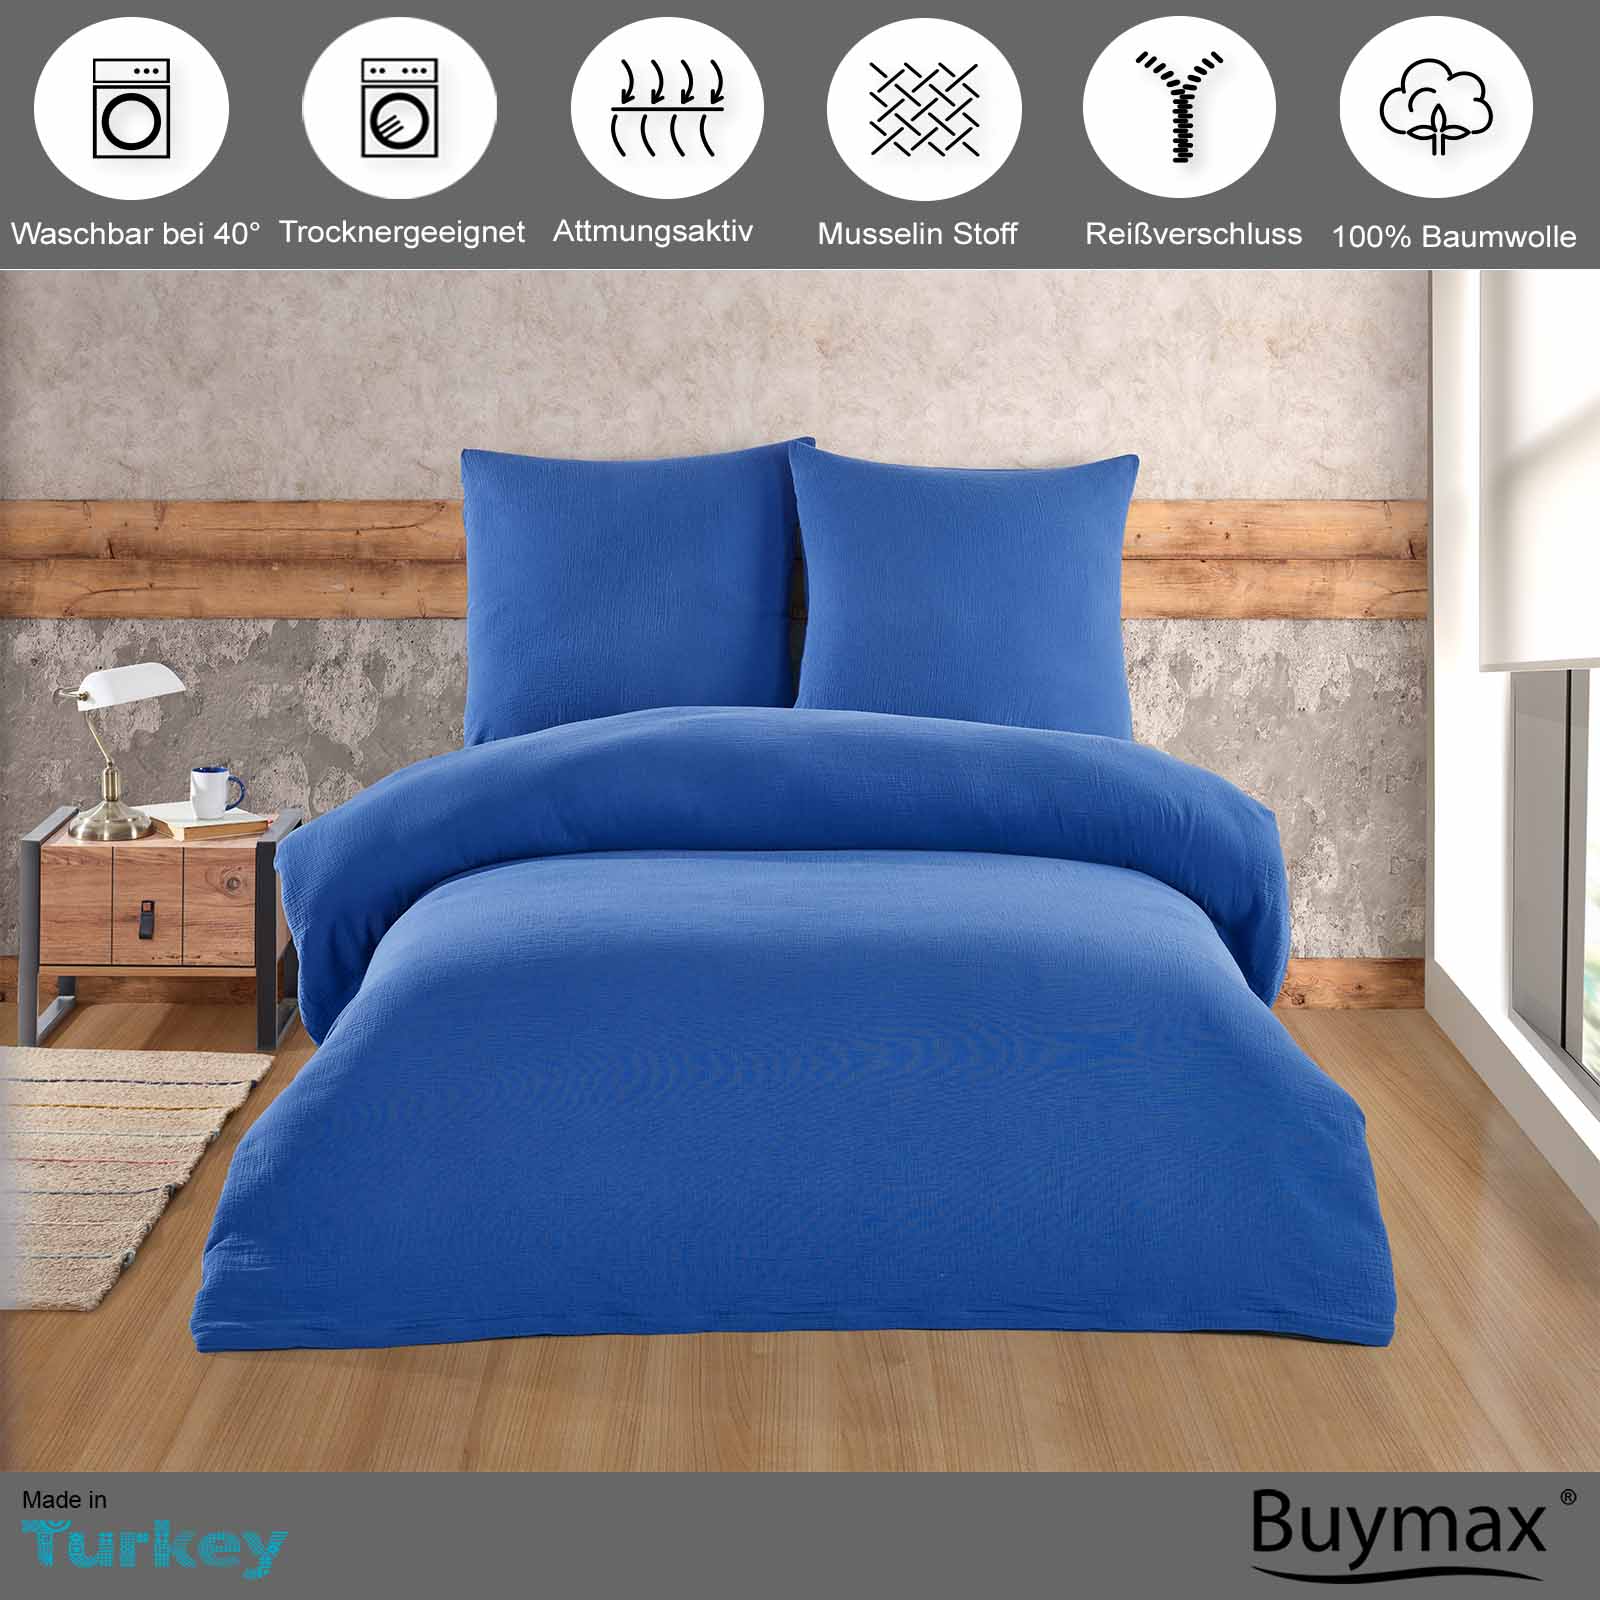 Buymax® Musselin Bettwäsche Set aus Baumwolle, Blau, 135x200 cm